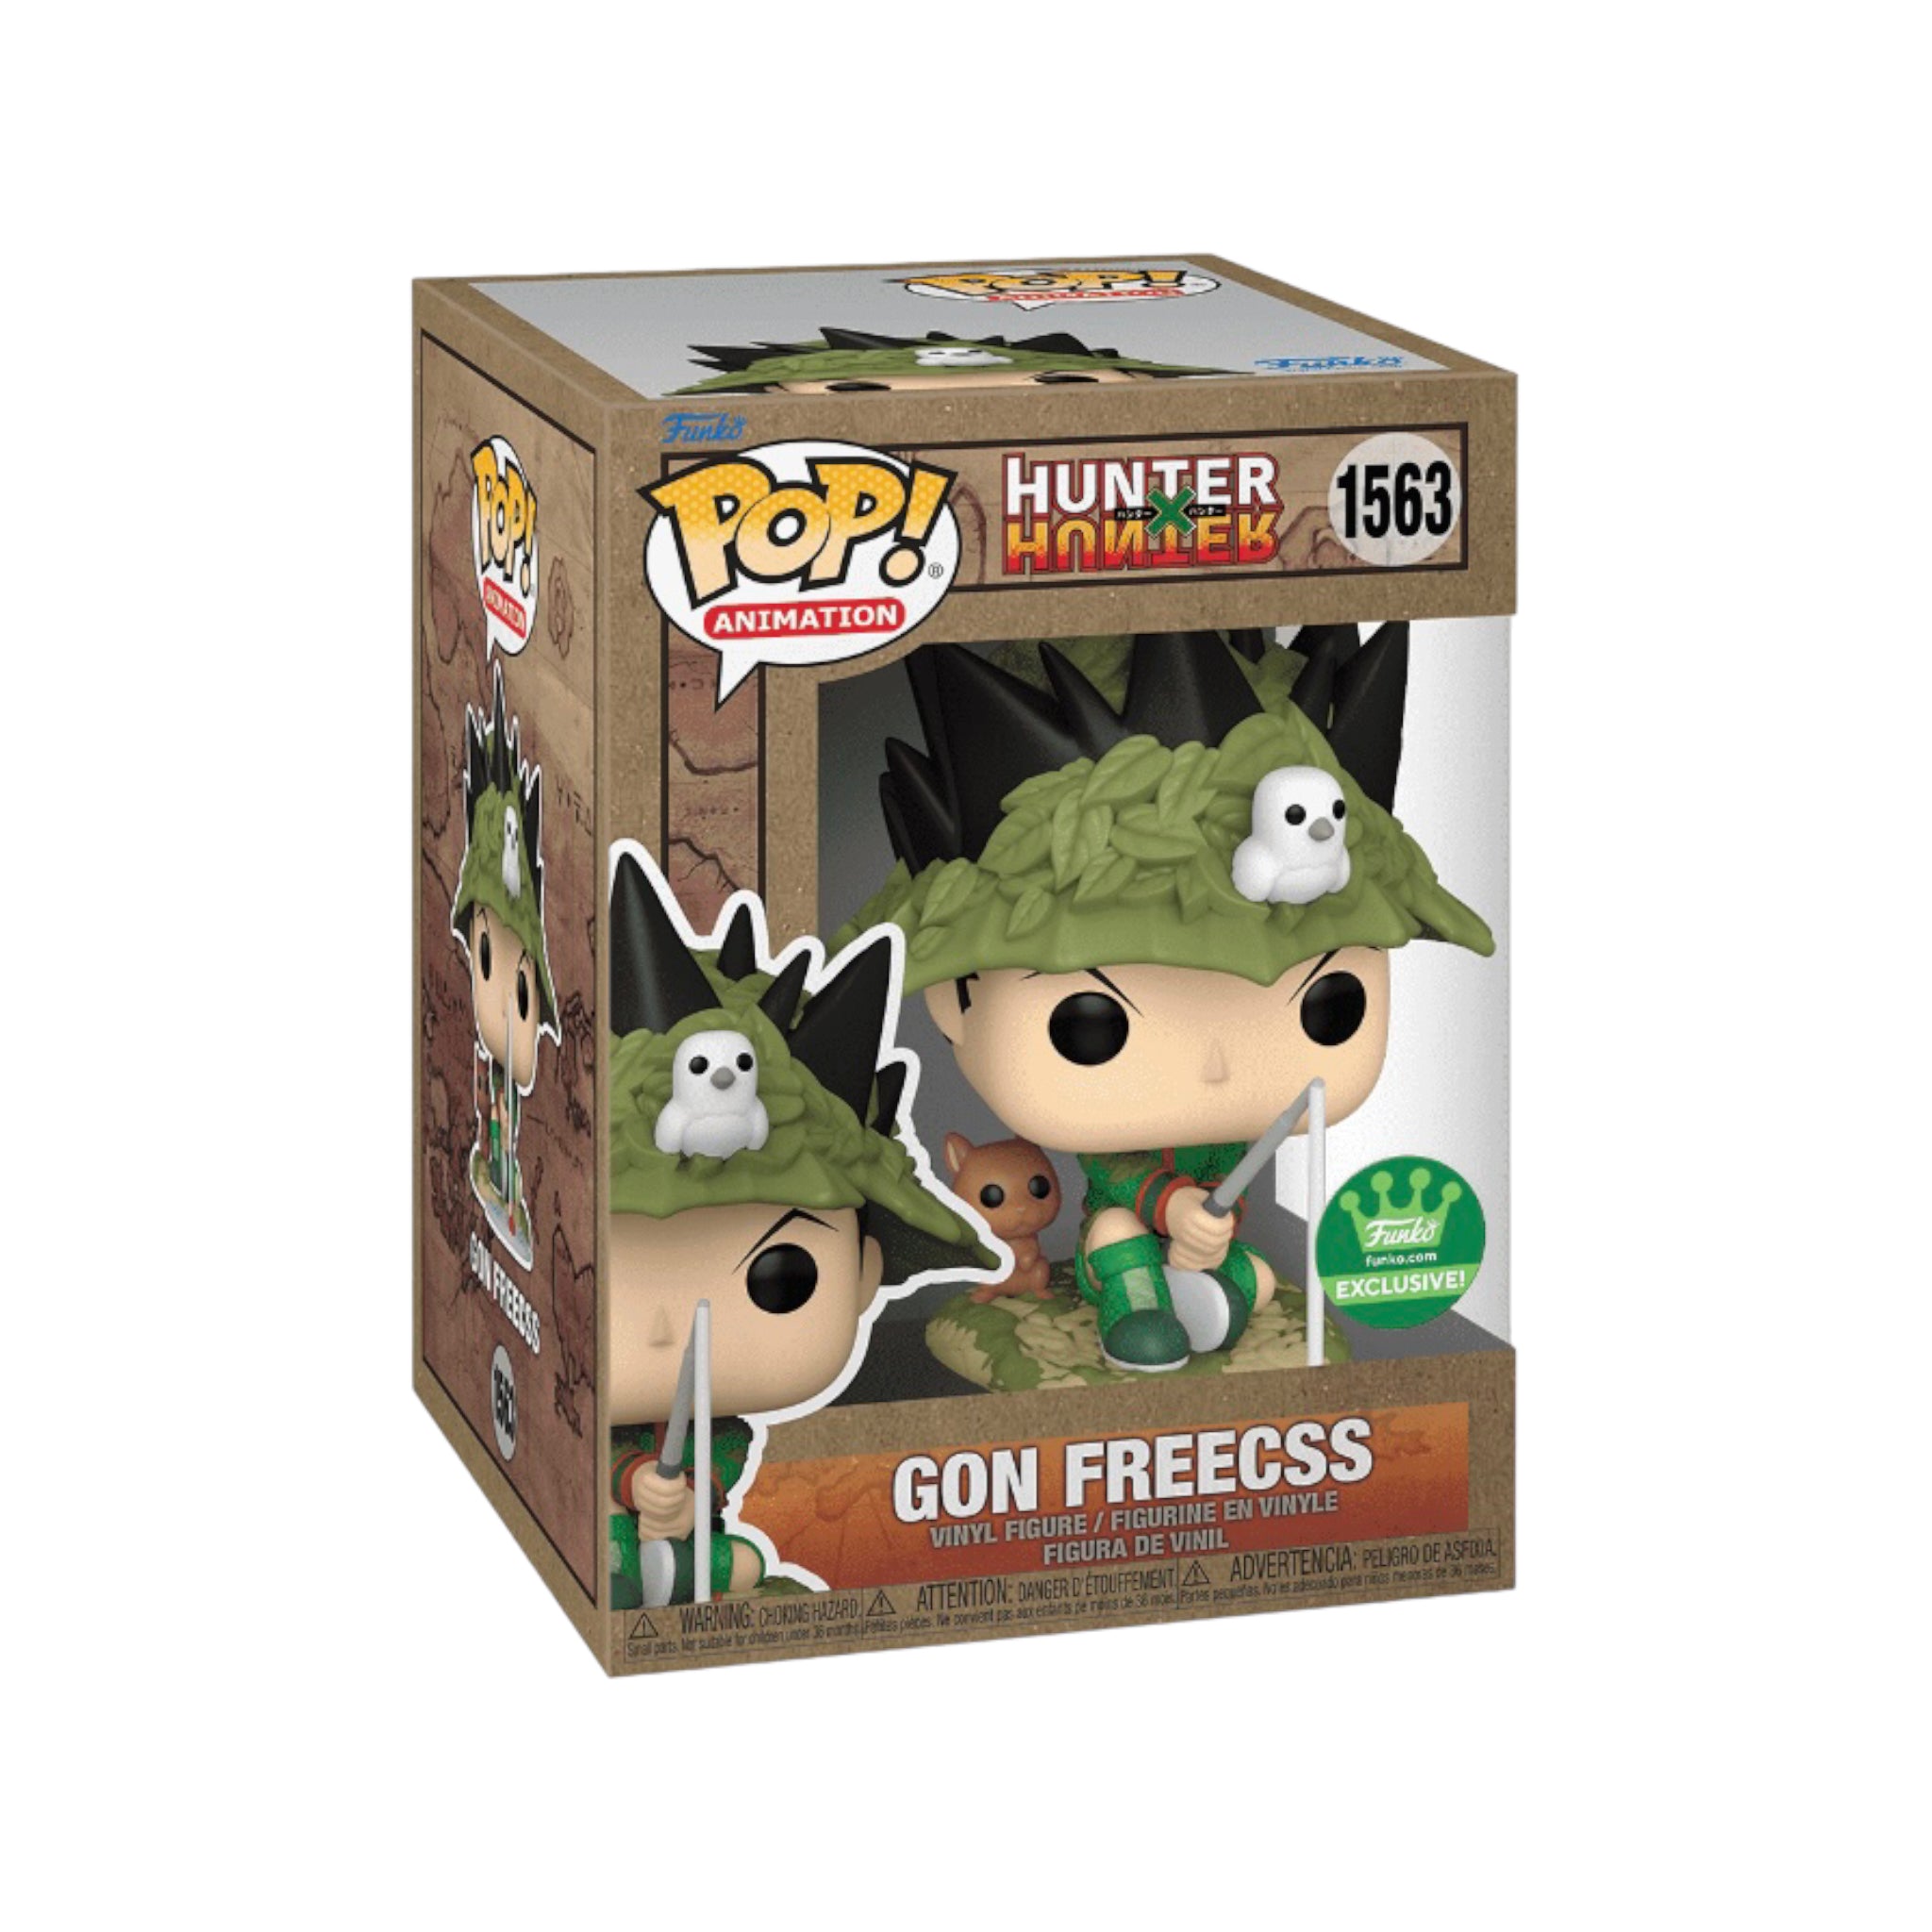 Gon Freecss #1563 (Fishing) Funko Pop! - Hunter x Hunter - Funko Shop Exclusive